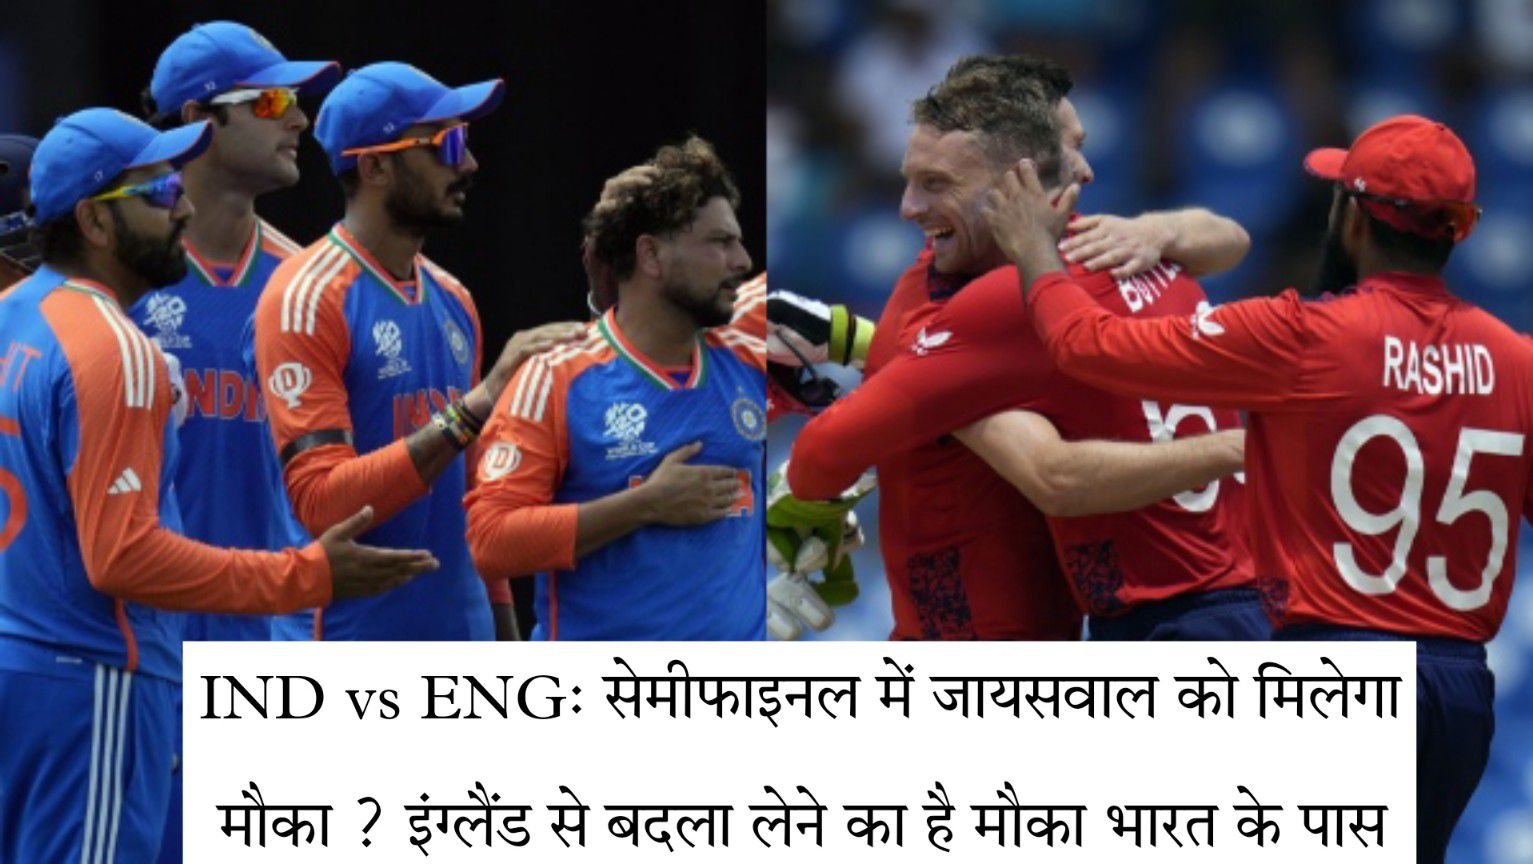 IND vs ENG